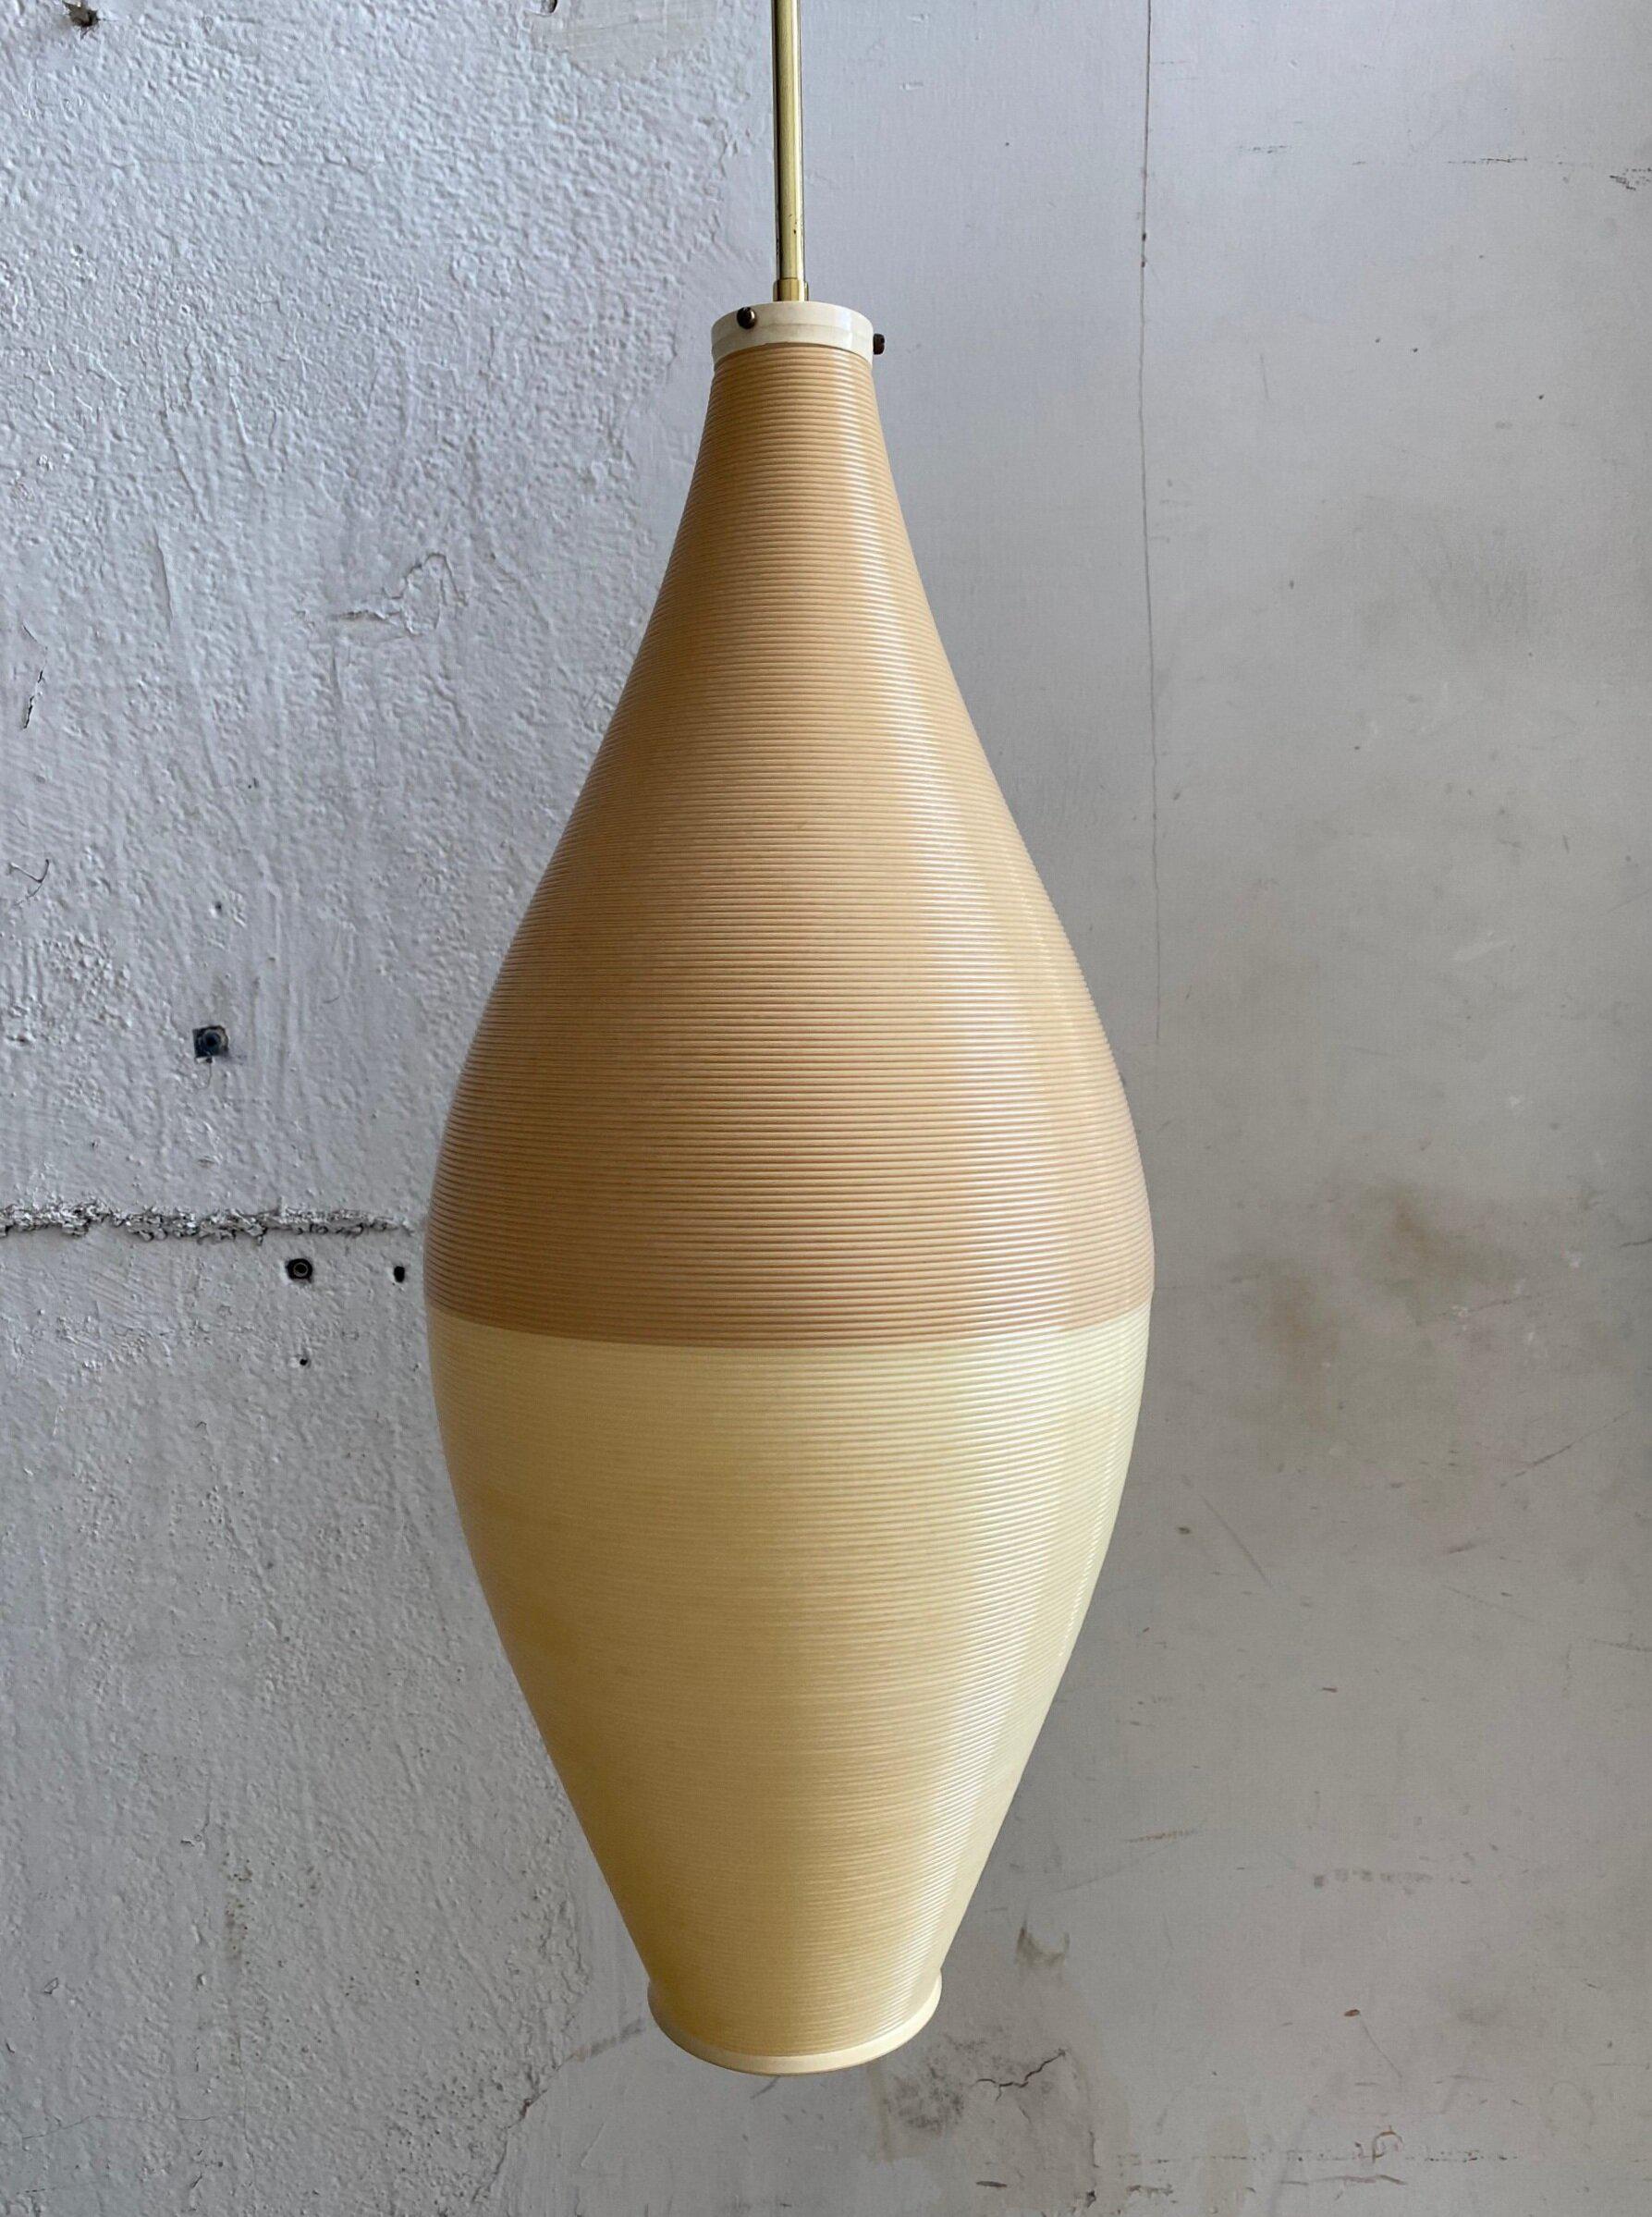 Vintage Mid-Century Rotaflex Suspension Lamp For Yasha Heifetz. L'abat-jour est en acétate de cellulose bicolore crème et beige filé à la main. Abat-jour en forme de cône avec quincaillerie en laiton. Vers les années 1950. Produit une belle lueur